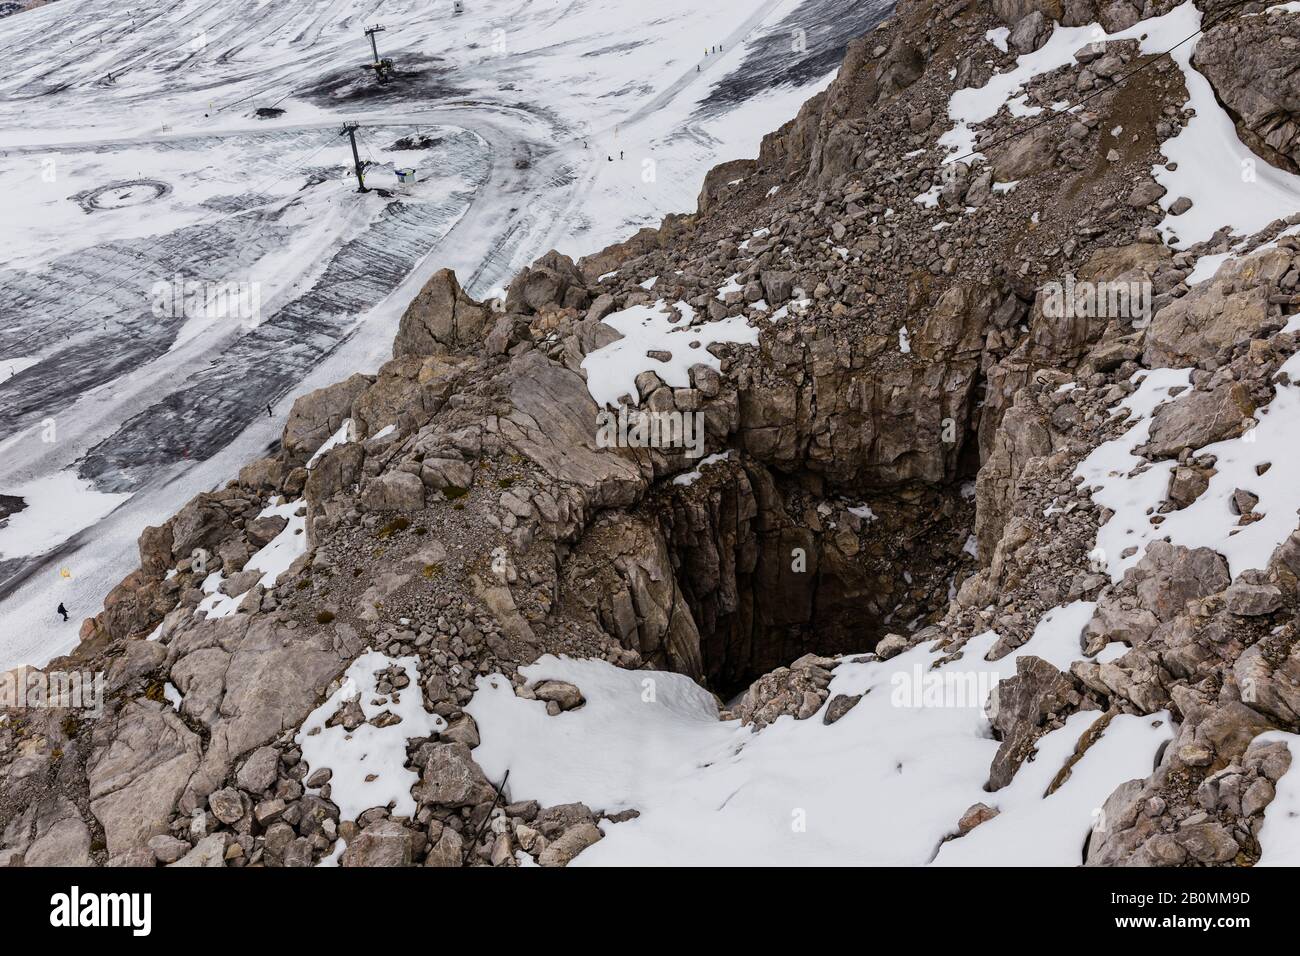 Tausendjährige Gletschereisschmelzen, die den Felsen der Alpen freilegen Stockfoto